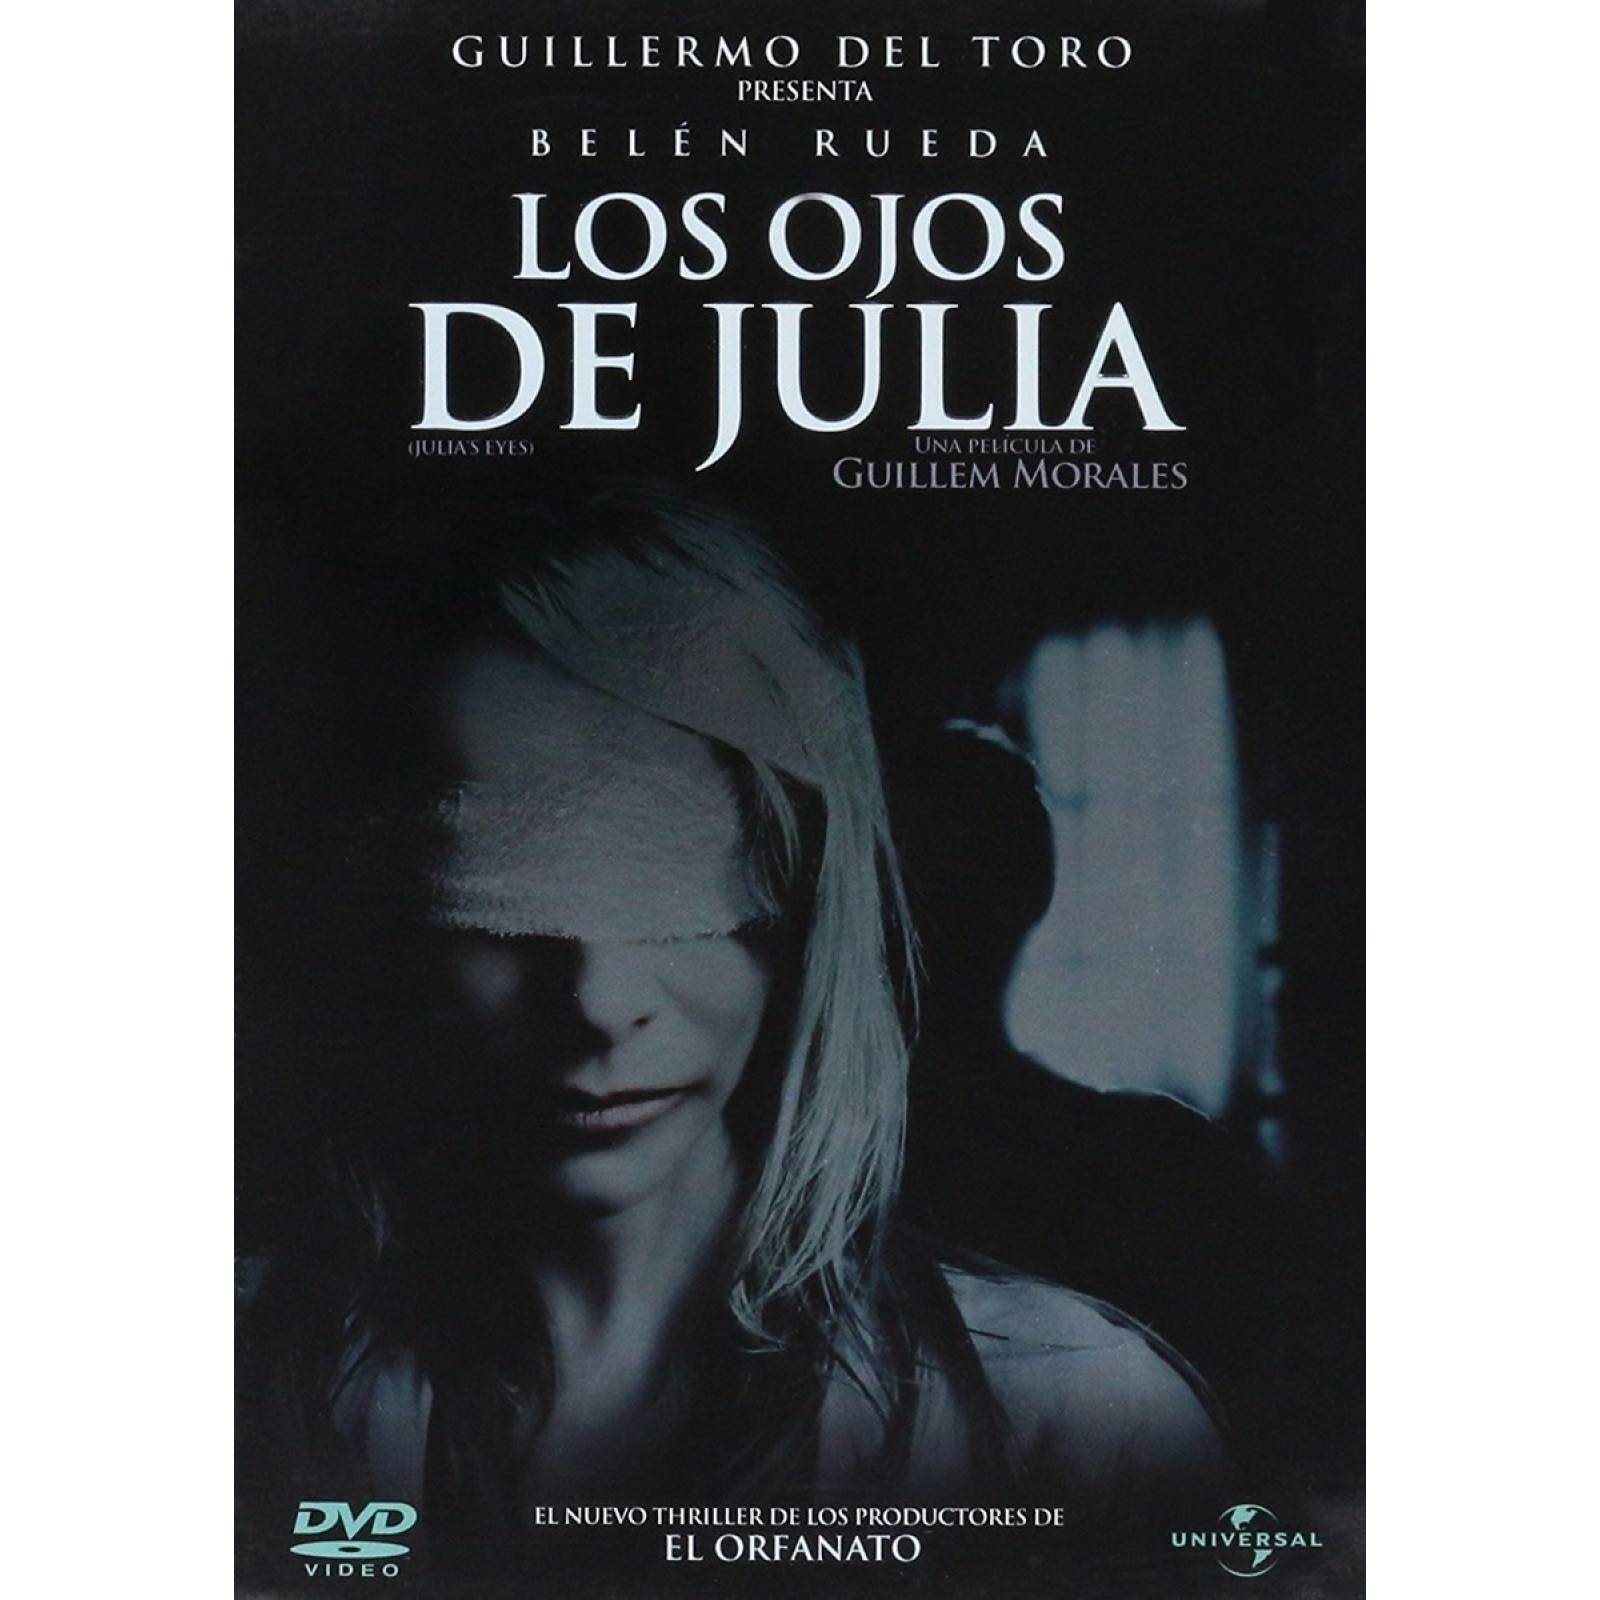 Los Ojos De Julia Julia S Eyes Guillermo Toro Pelicula Dvd